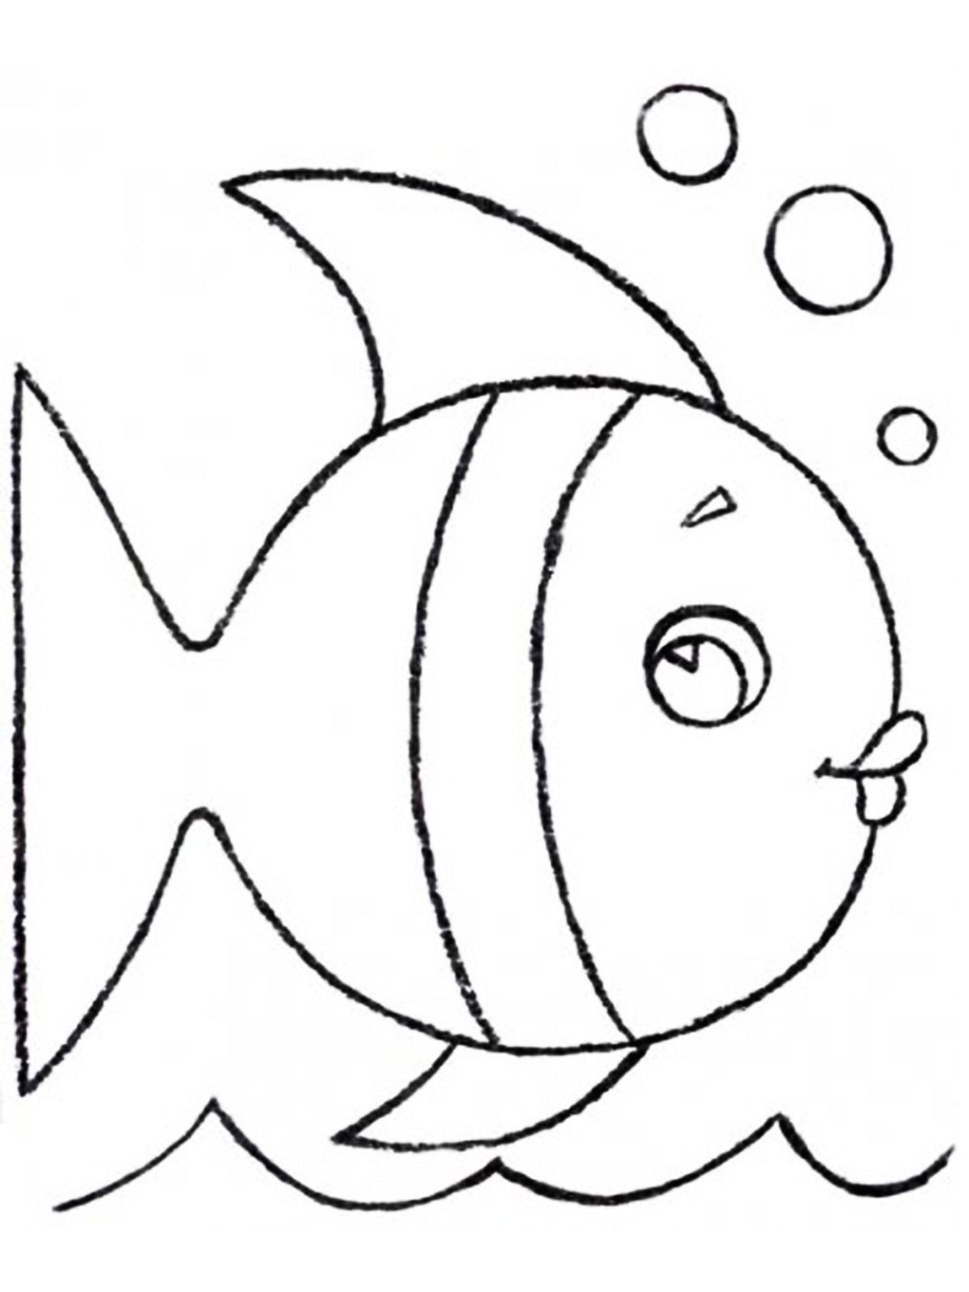 Malvorlagen Fische Zum Ausdrucken
 Ausmalbilder Fisch Malvorlagen ausdrucken 3